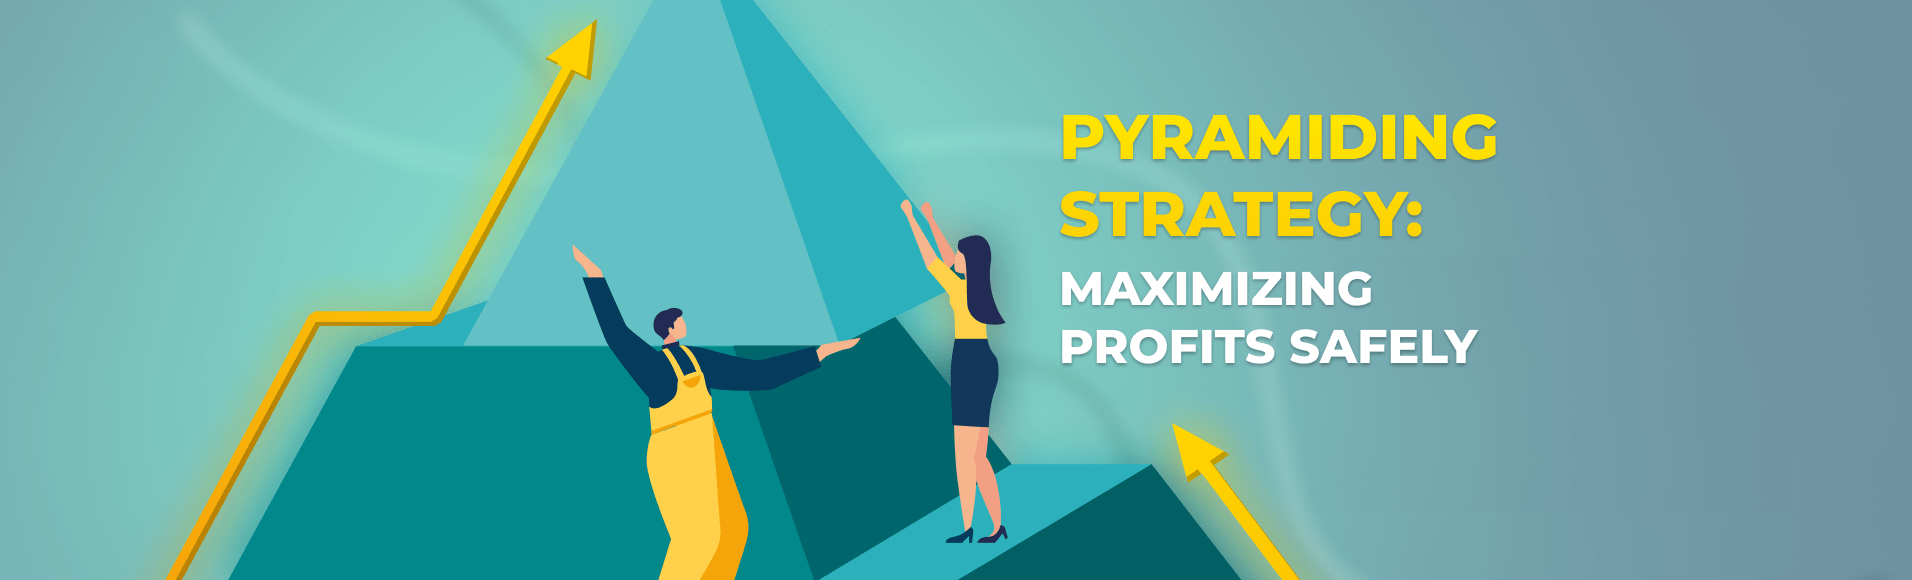 Stratégie pyramidale : maximiser les profits en toute sécurité